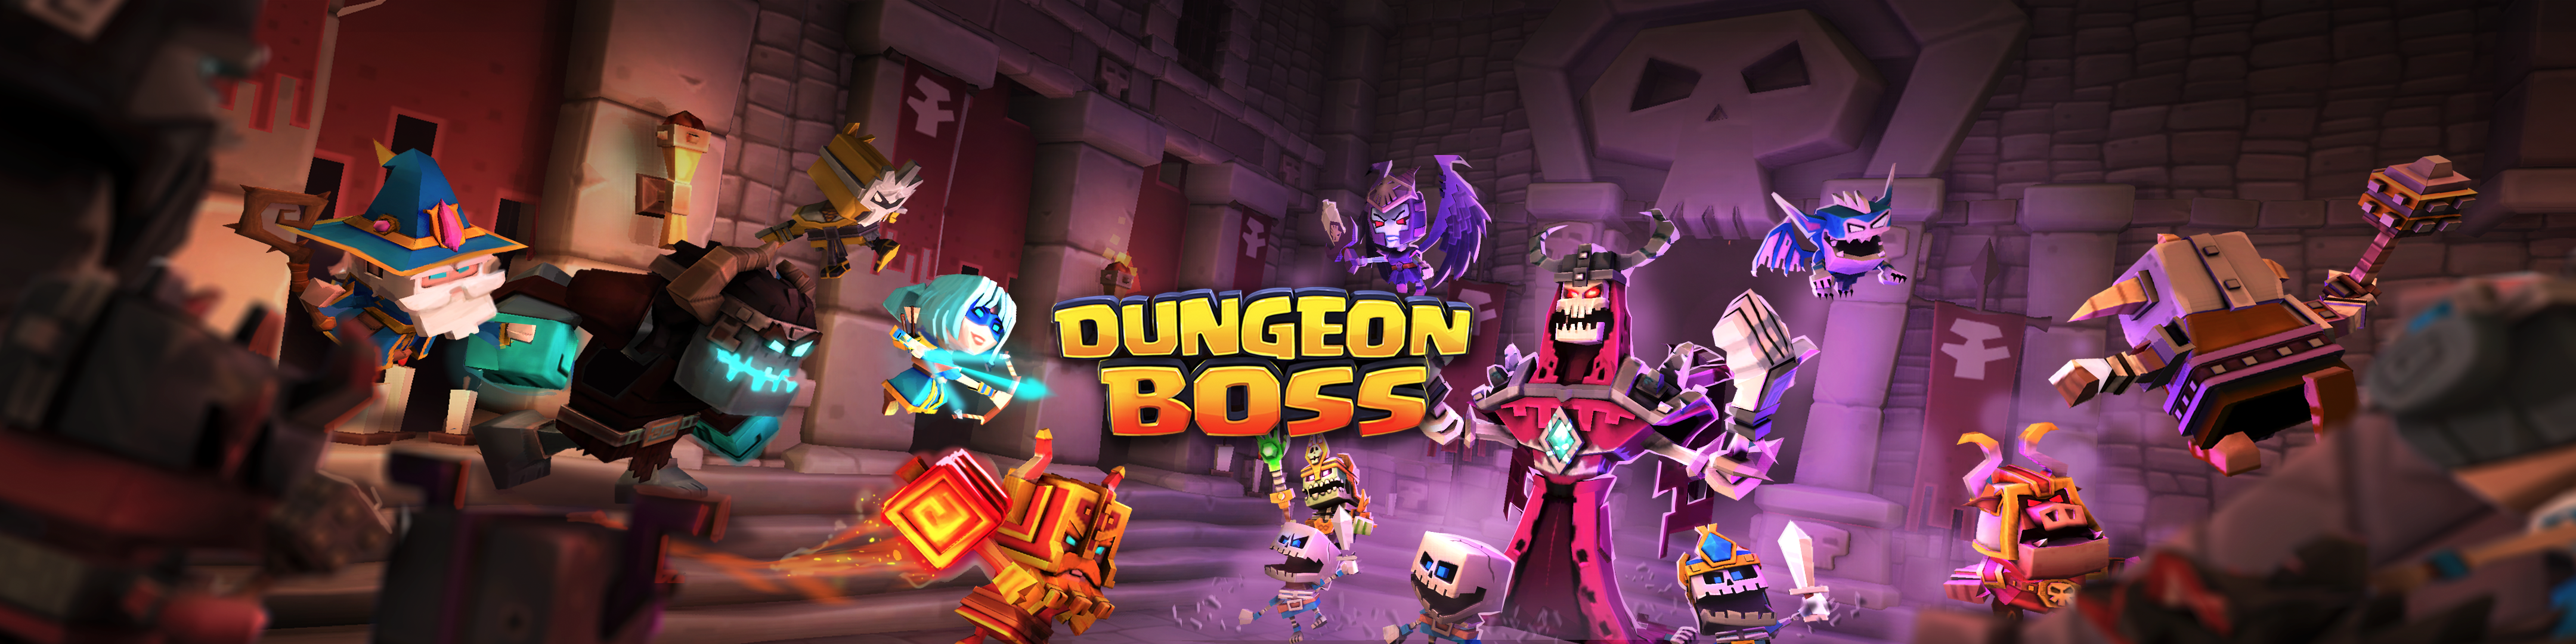 Dungeon Boss Overview Apple App Store Us - ninja assassin roblox adventures youtube heroes of